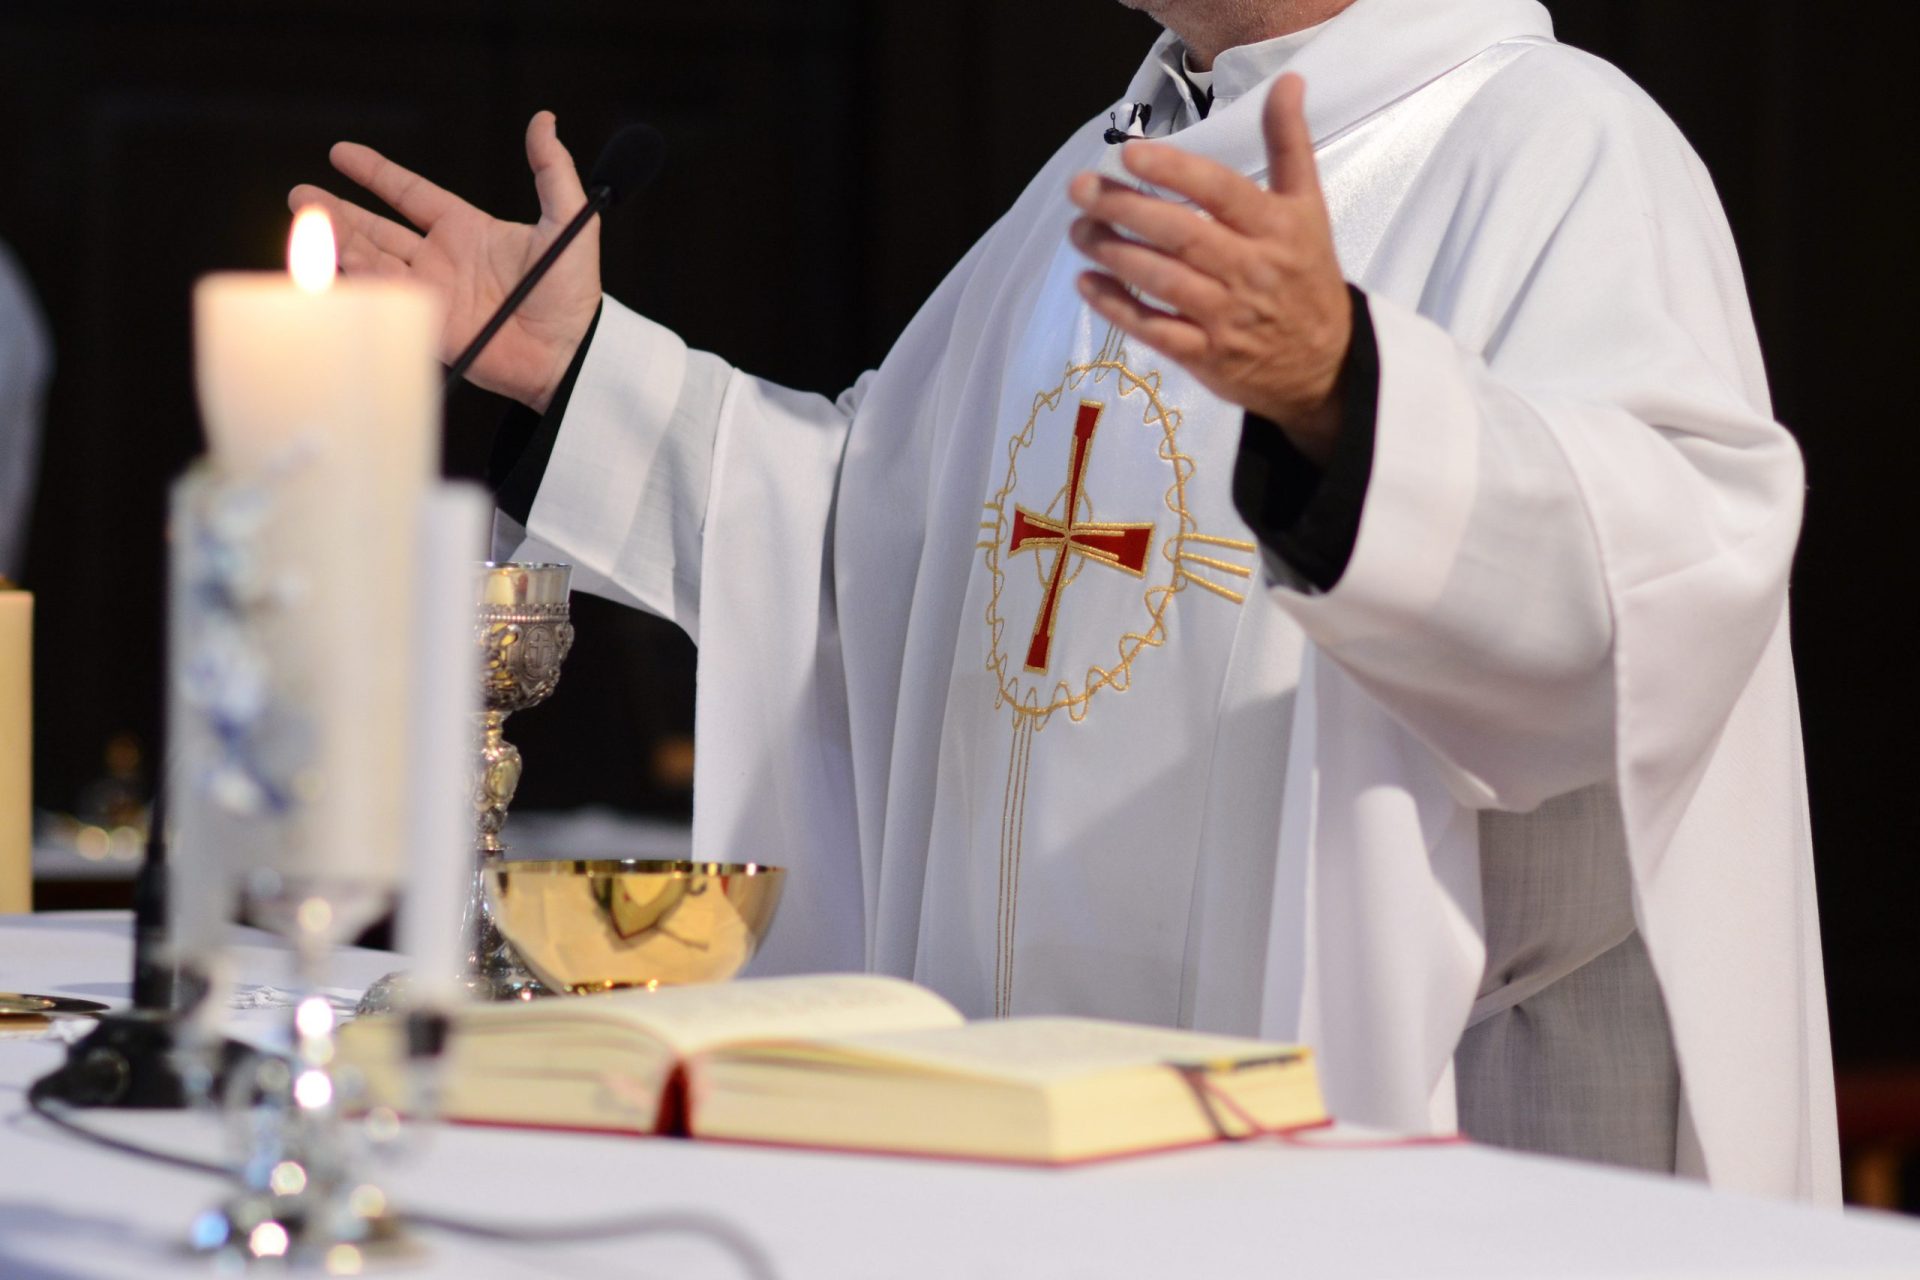 Igreja Católica vai criar comissão nacional para investigar eventuais casos de abusos sexuais